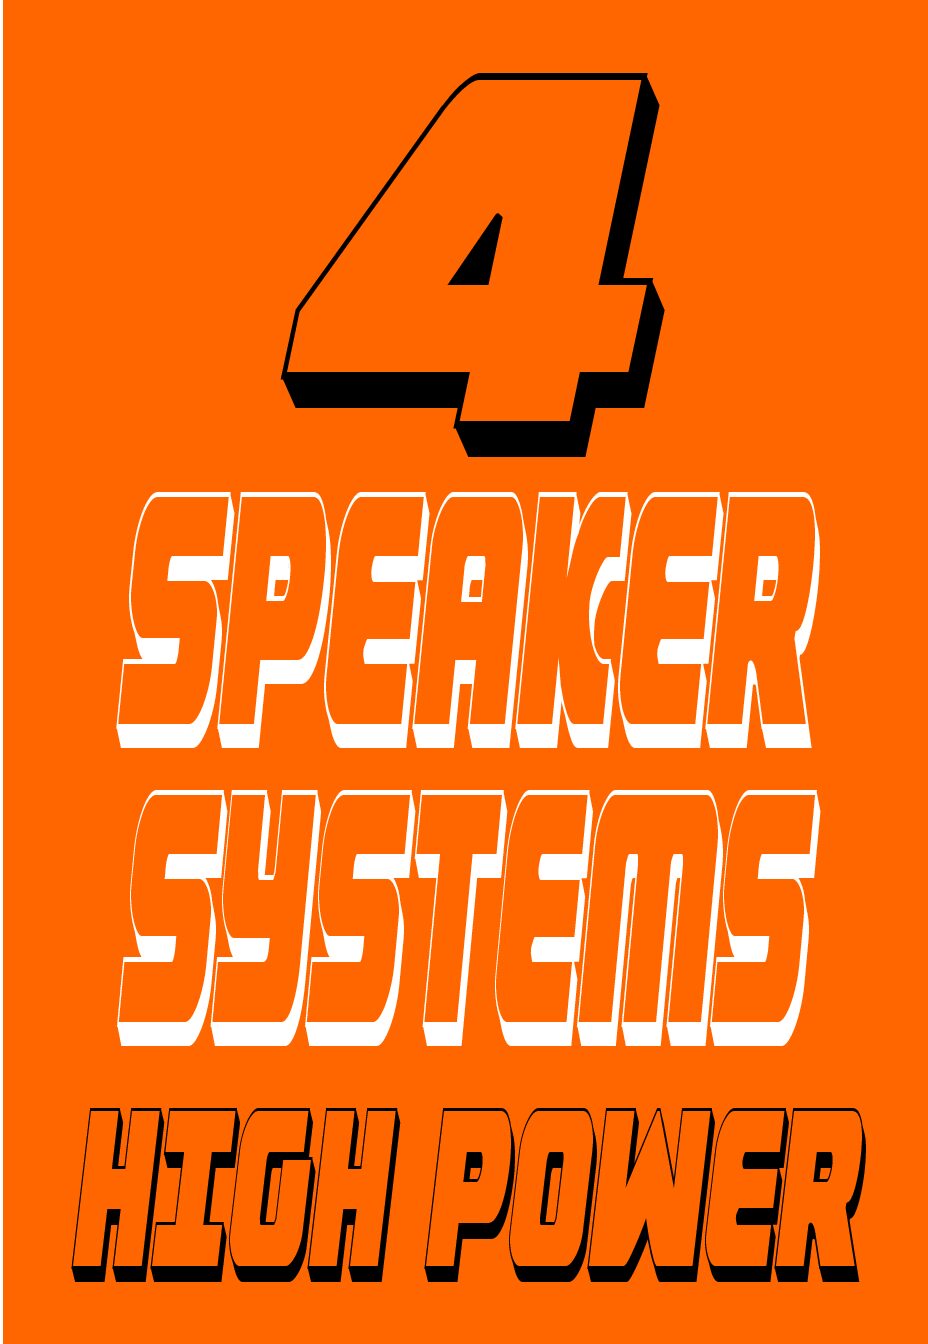 4 SPEAKER SYSTEMS HIGH POWER